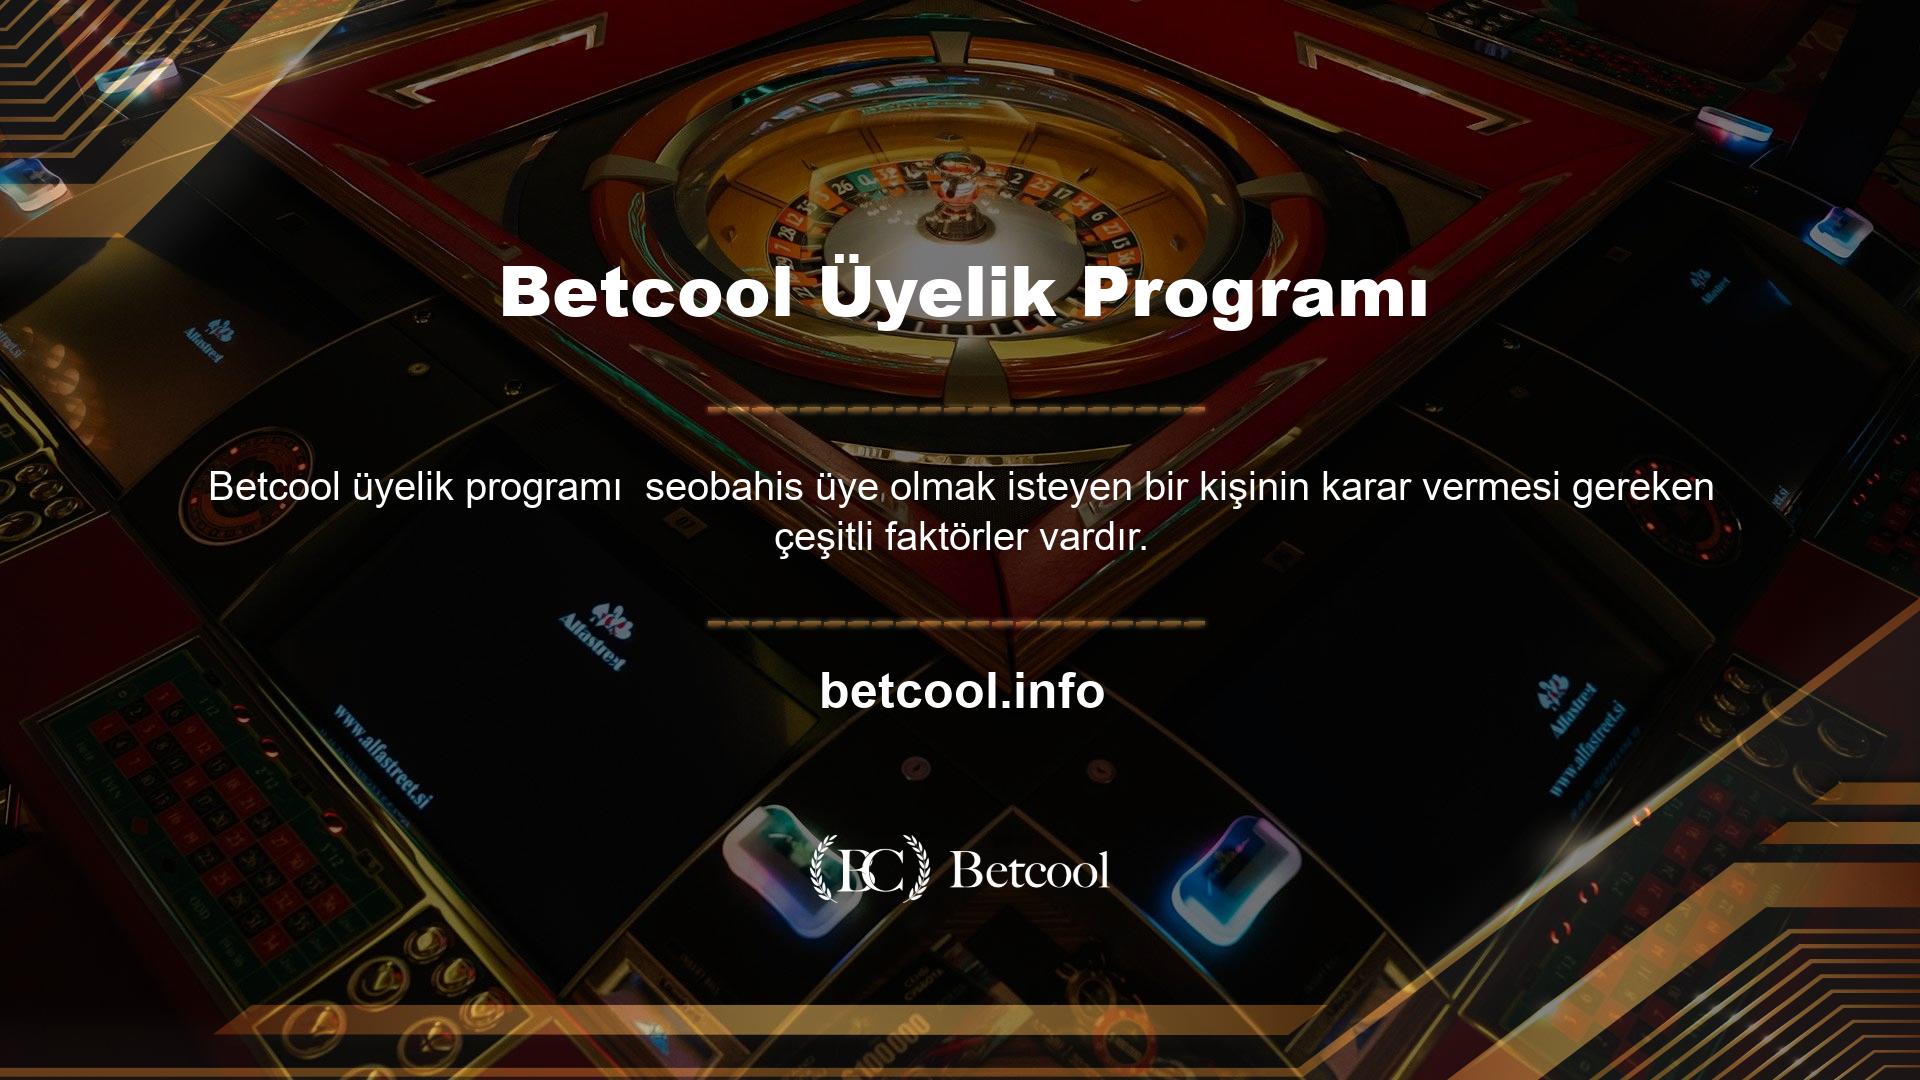 Bunu şu şekilde halledebilirsin: Betcool ile çalışmak isteyenlerin çok çeşitli seçenekleri var